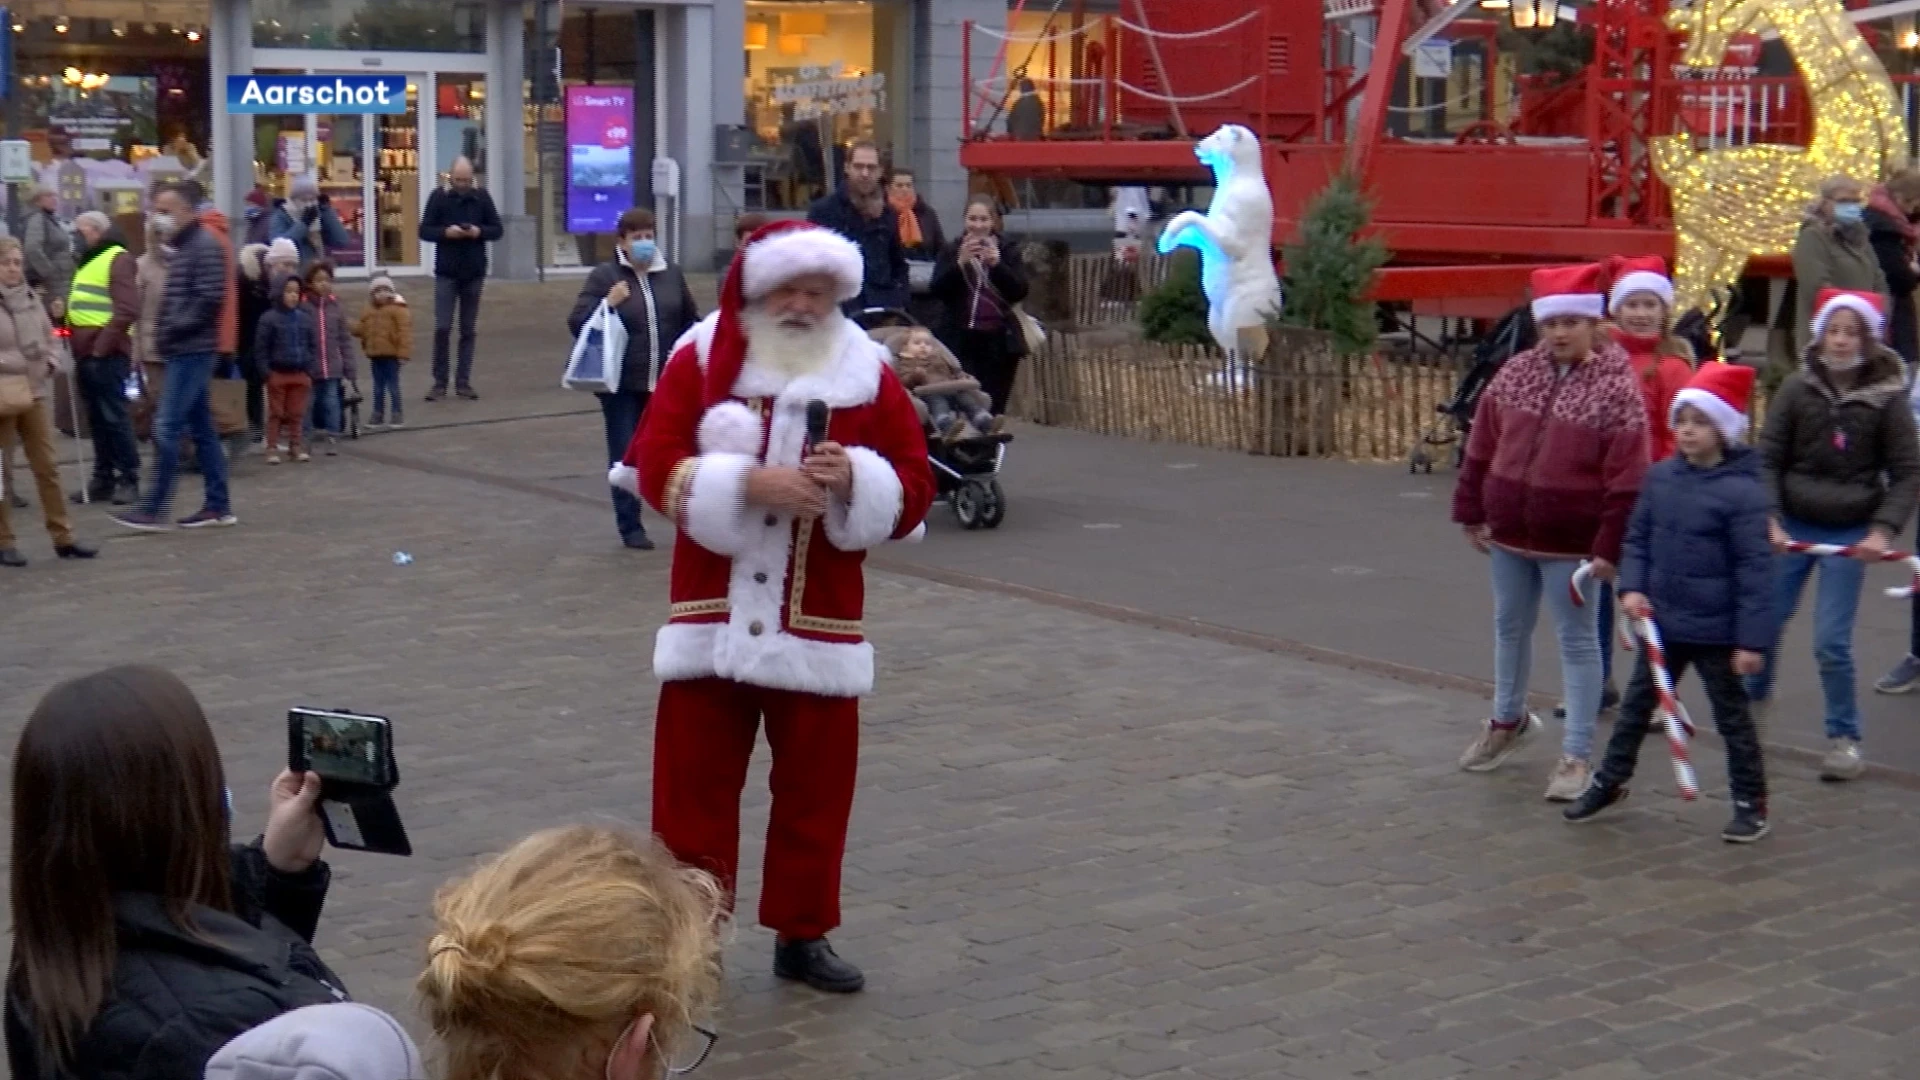 Kerstman en elfjes stelen de show in Aarschot tijdens flashmob op Grote Markt